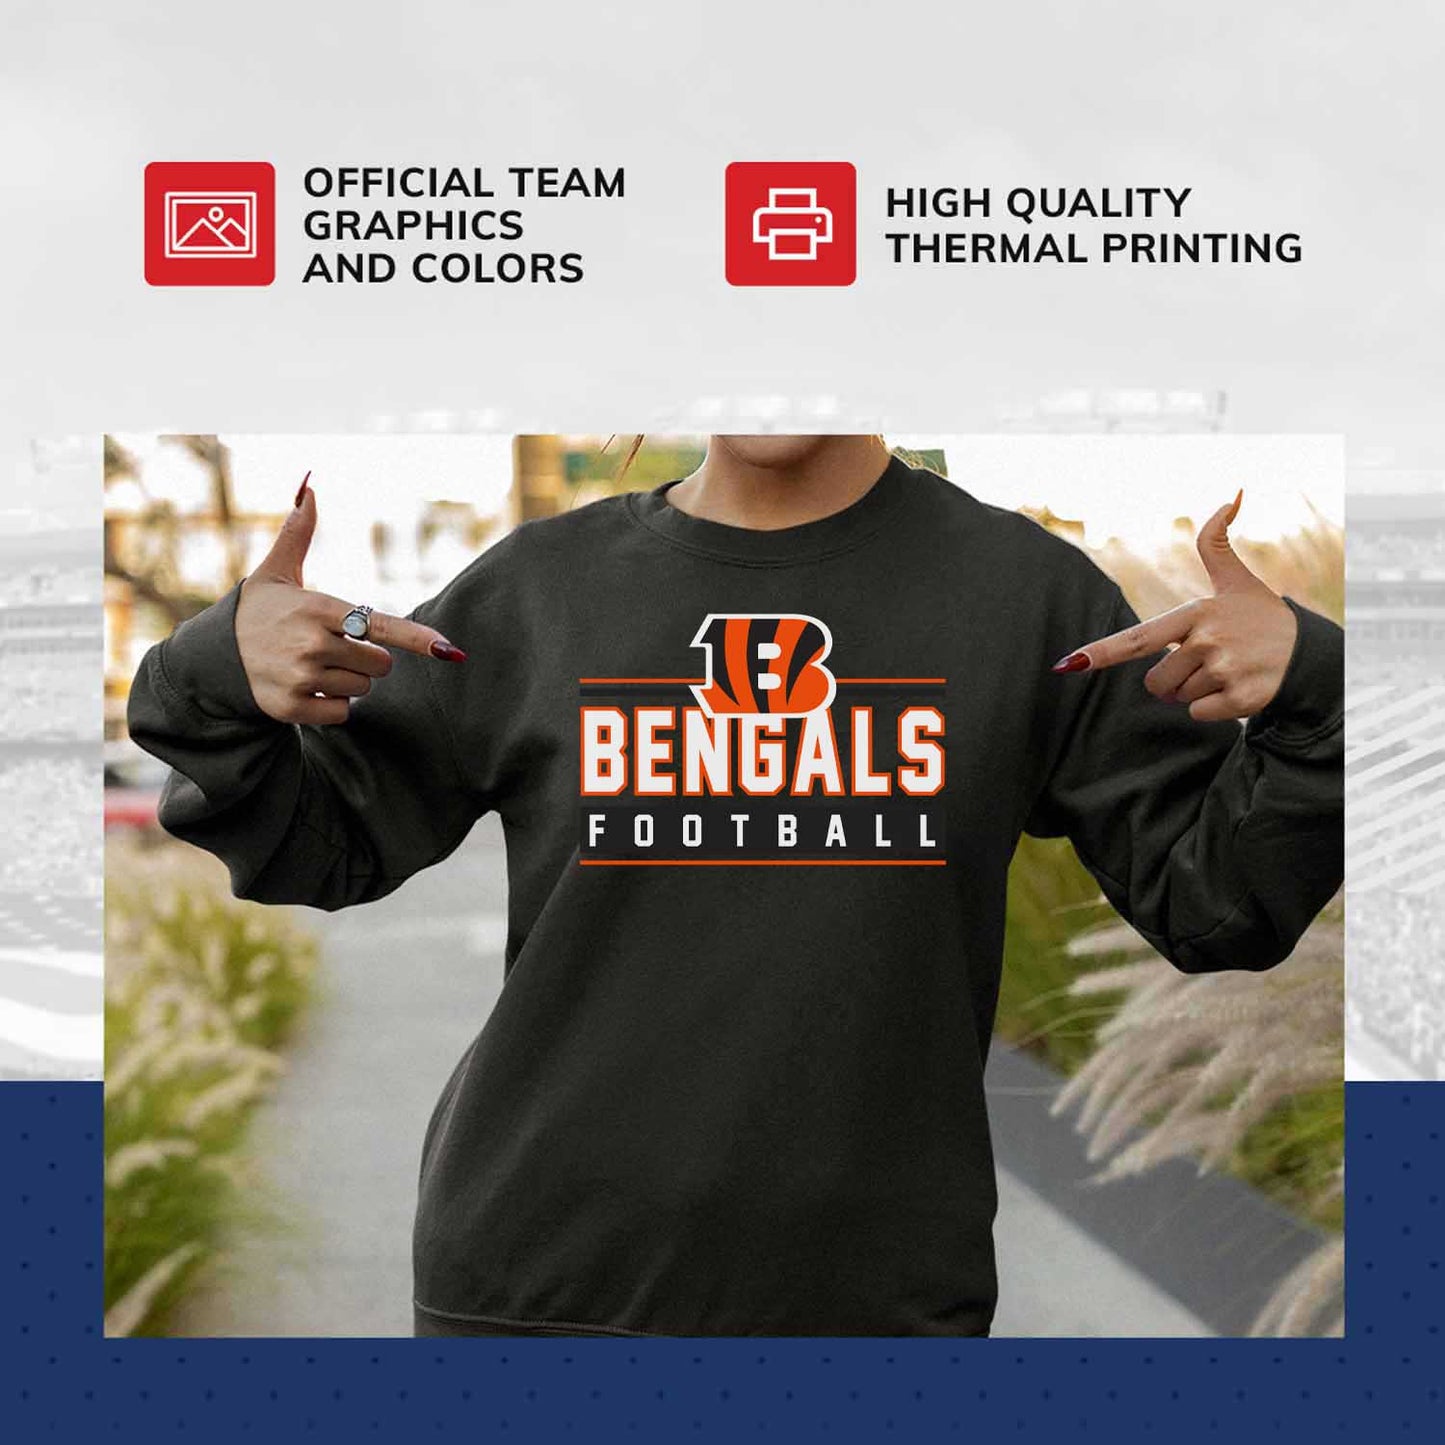 Cincinnati Bengals NFL Adult True Fan Crewneck Sweatshirt - Charcoal